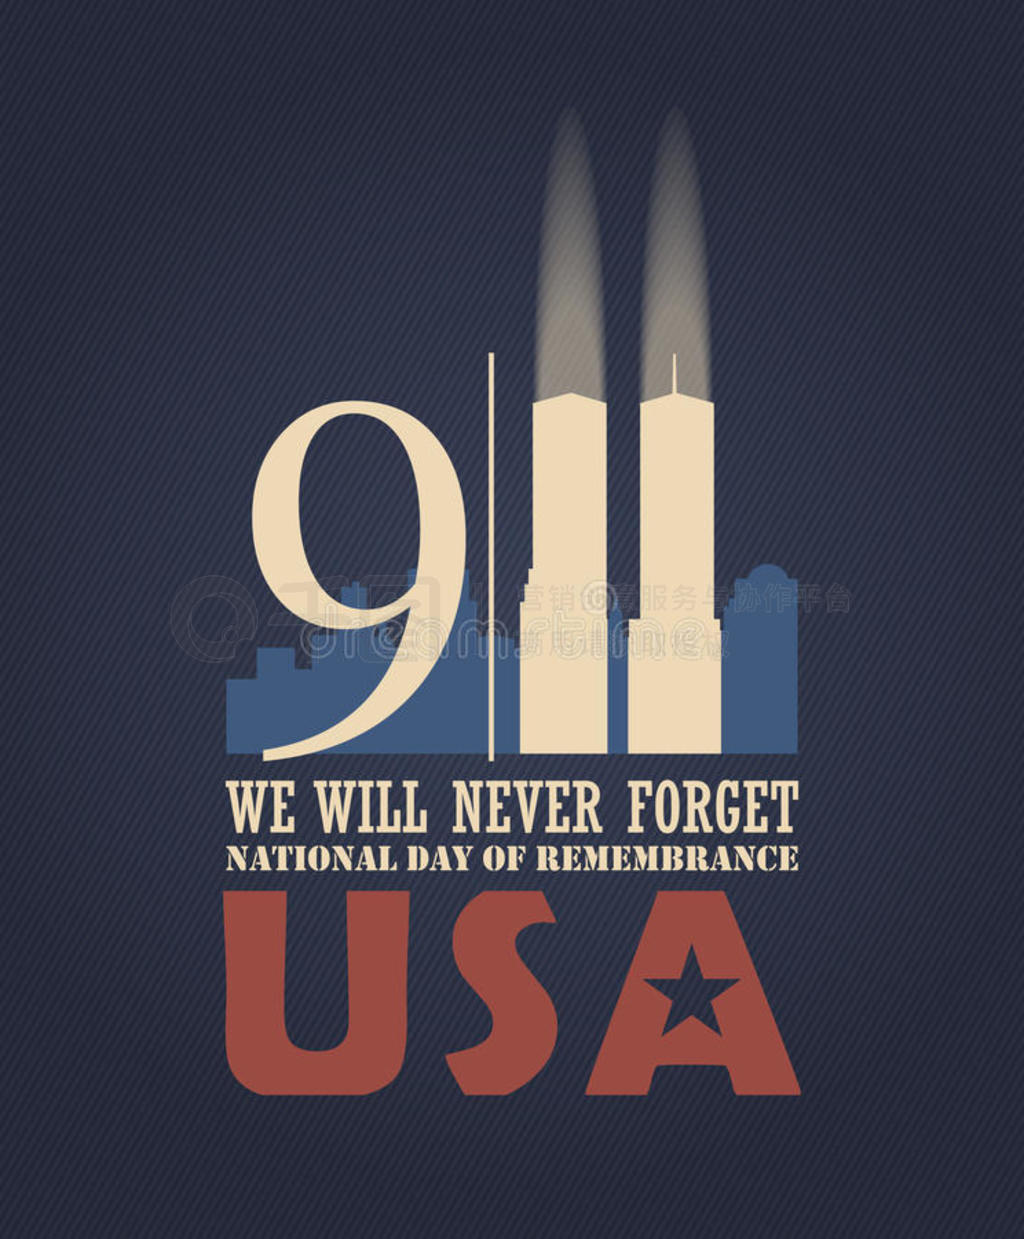 9/11գ911